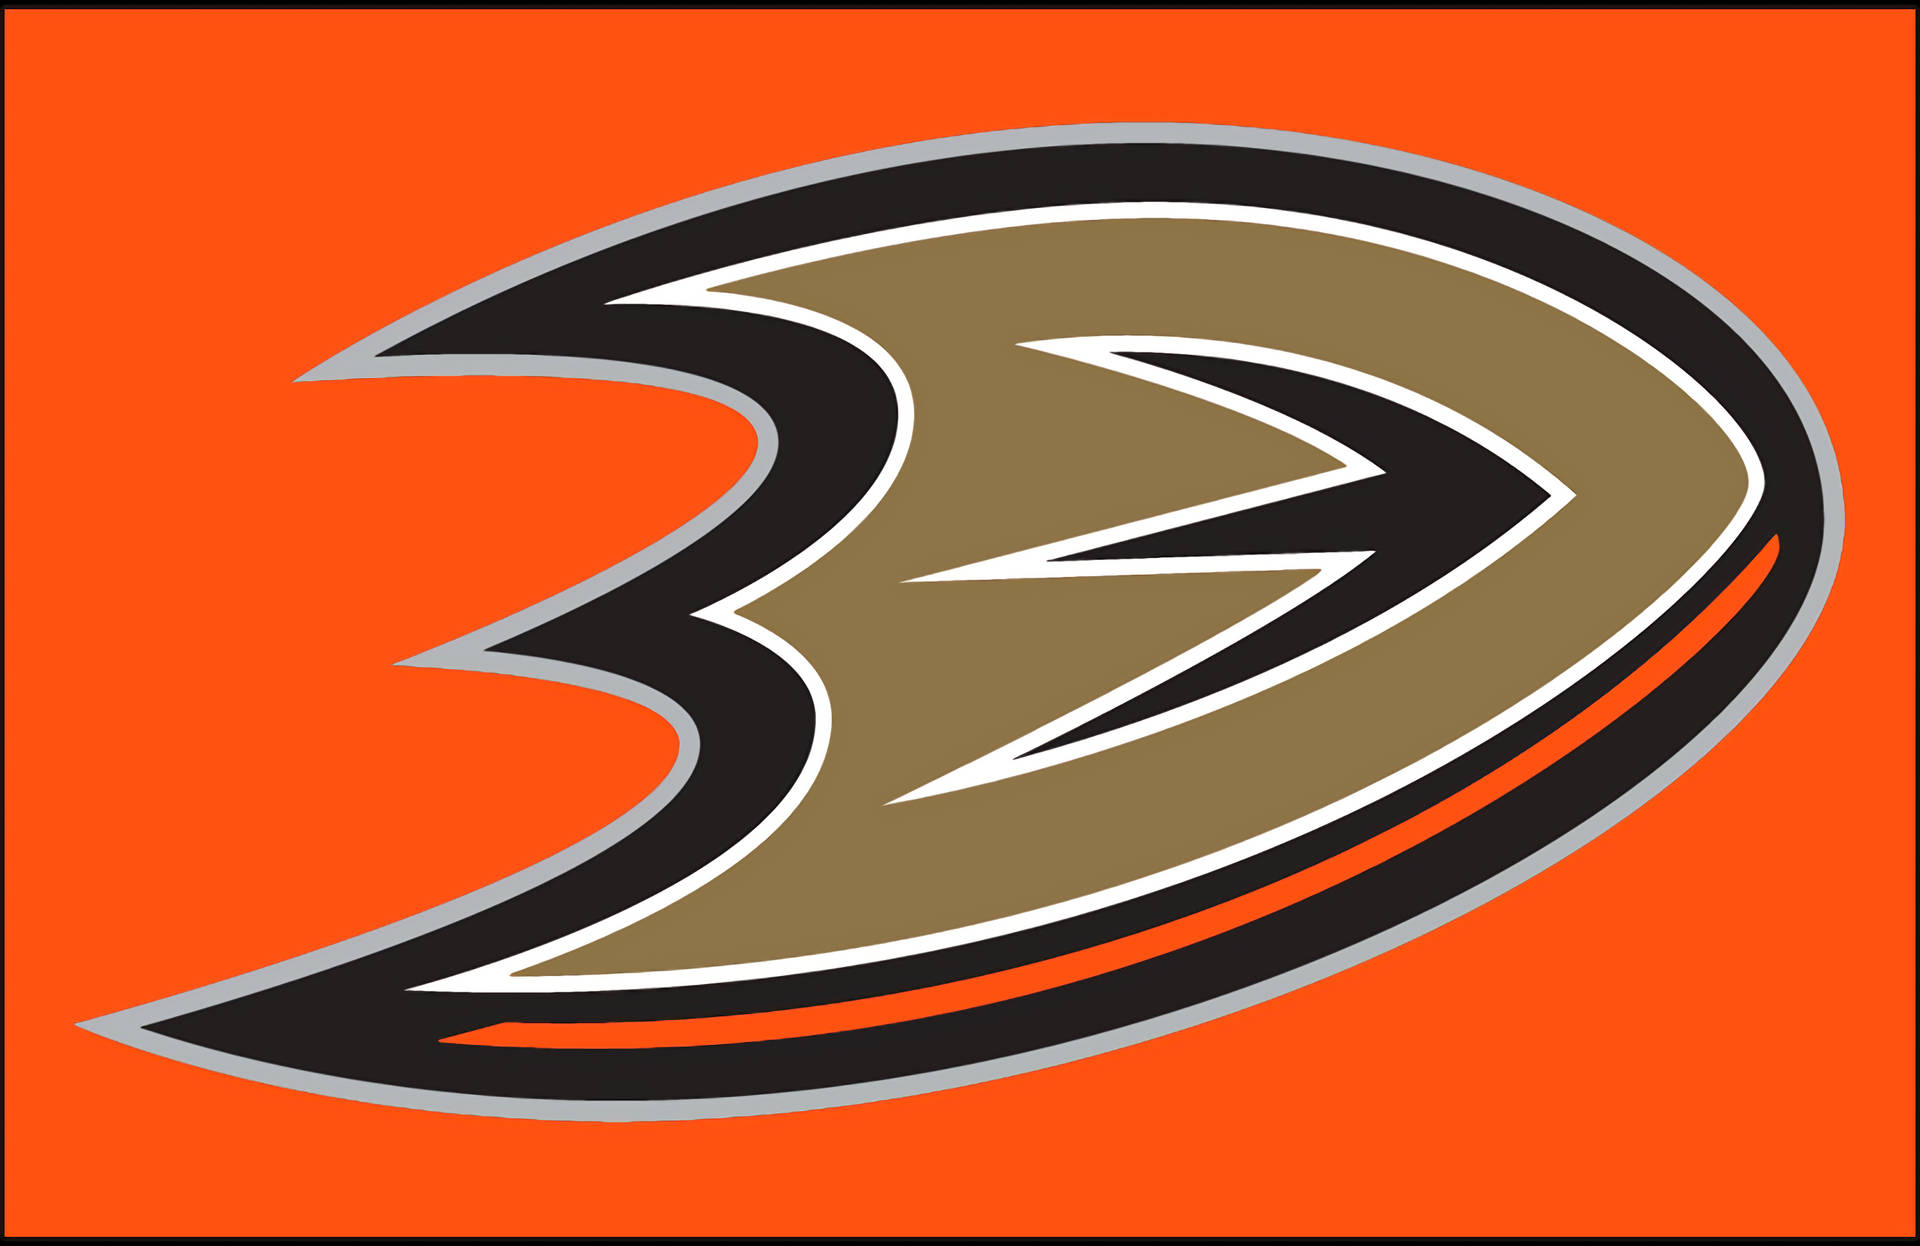 2013 Anaheim Ducks Orange Background Background